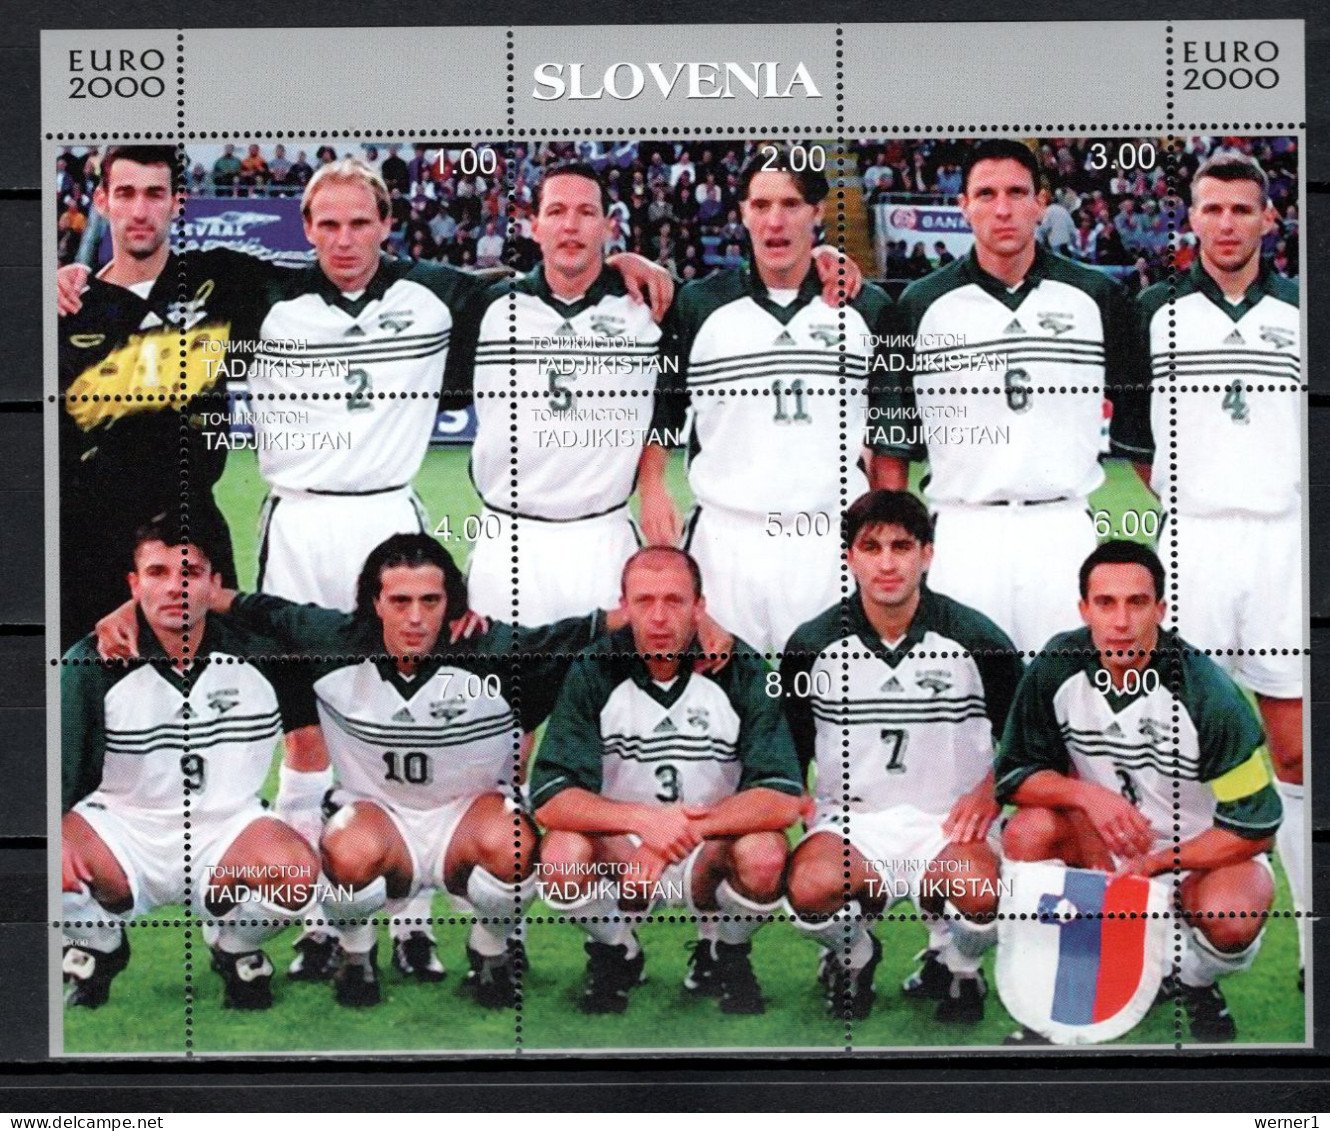 Tadzikistan 2000 Football Soccer European Championship, Sheetlet With Slovenia Team MNH - Fußball-Europameisterschaft (UEFA)